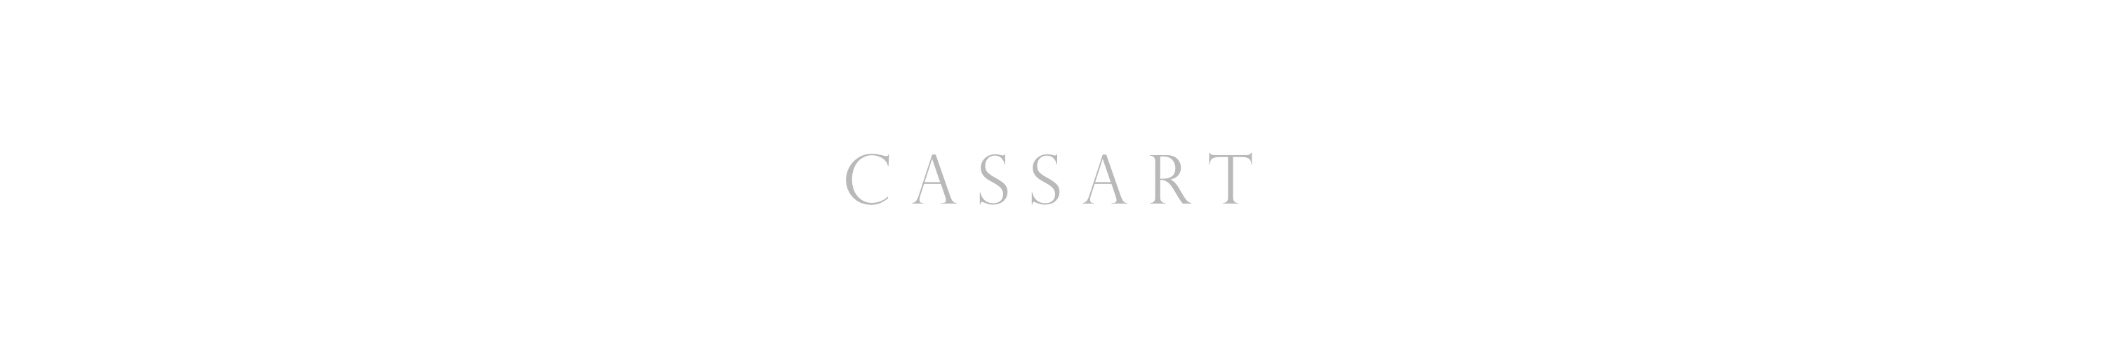 CASSART1